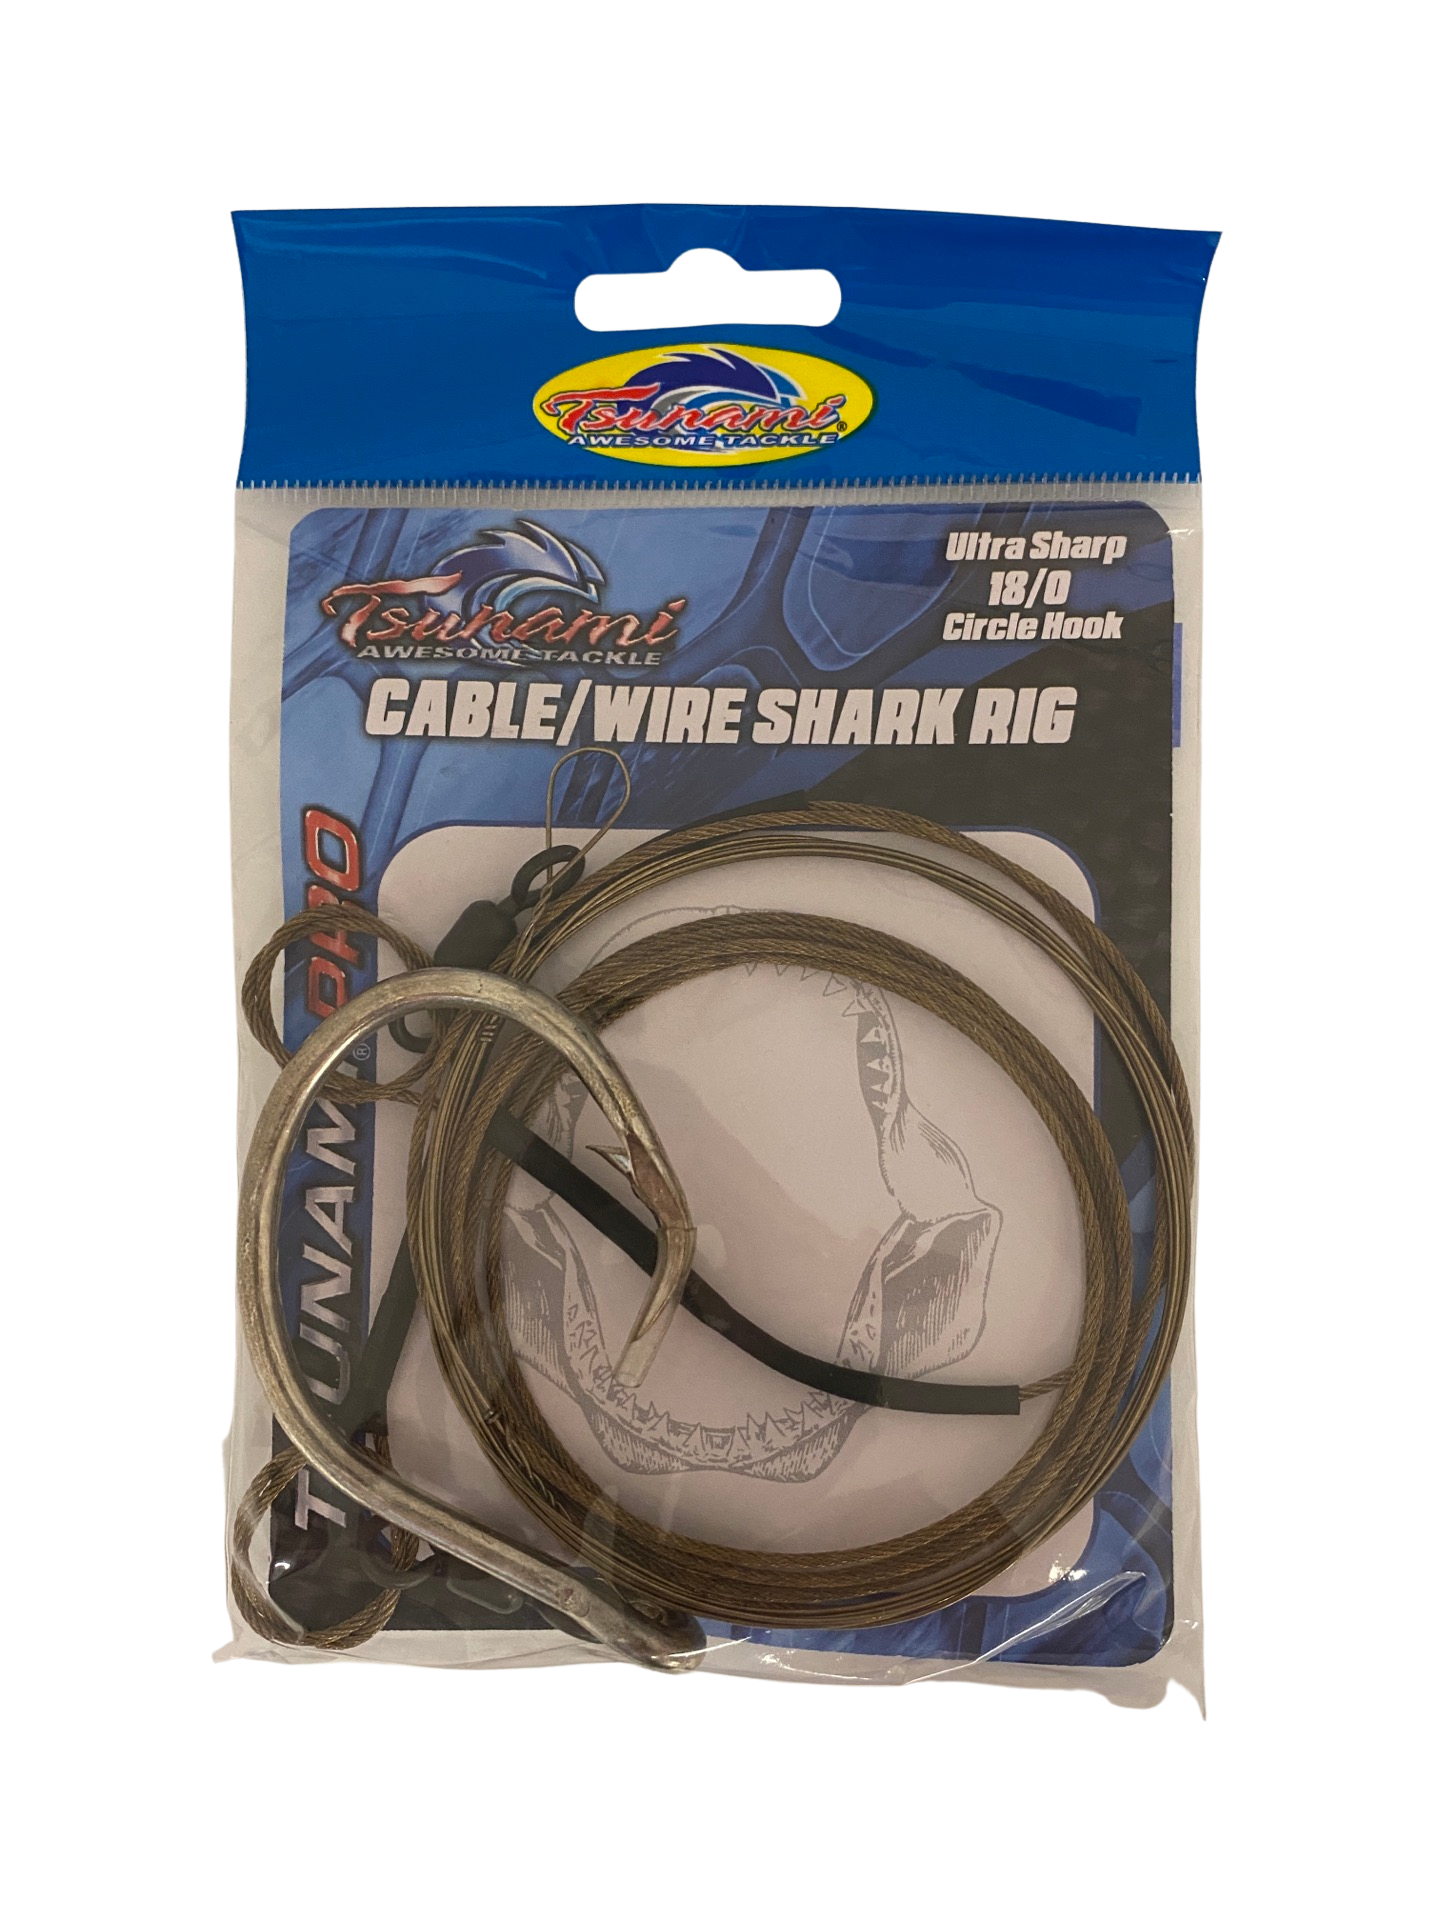 Tsunami - Pro Cable/Wire Shark Rig